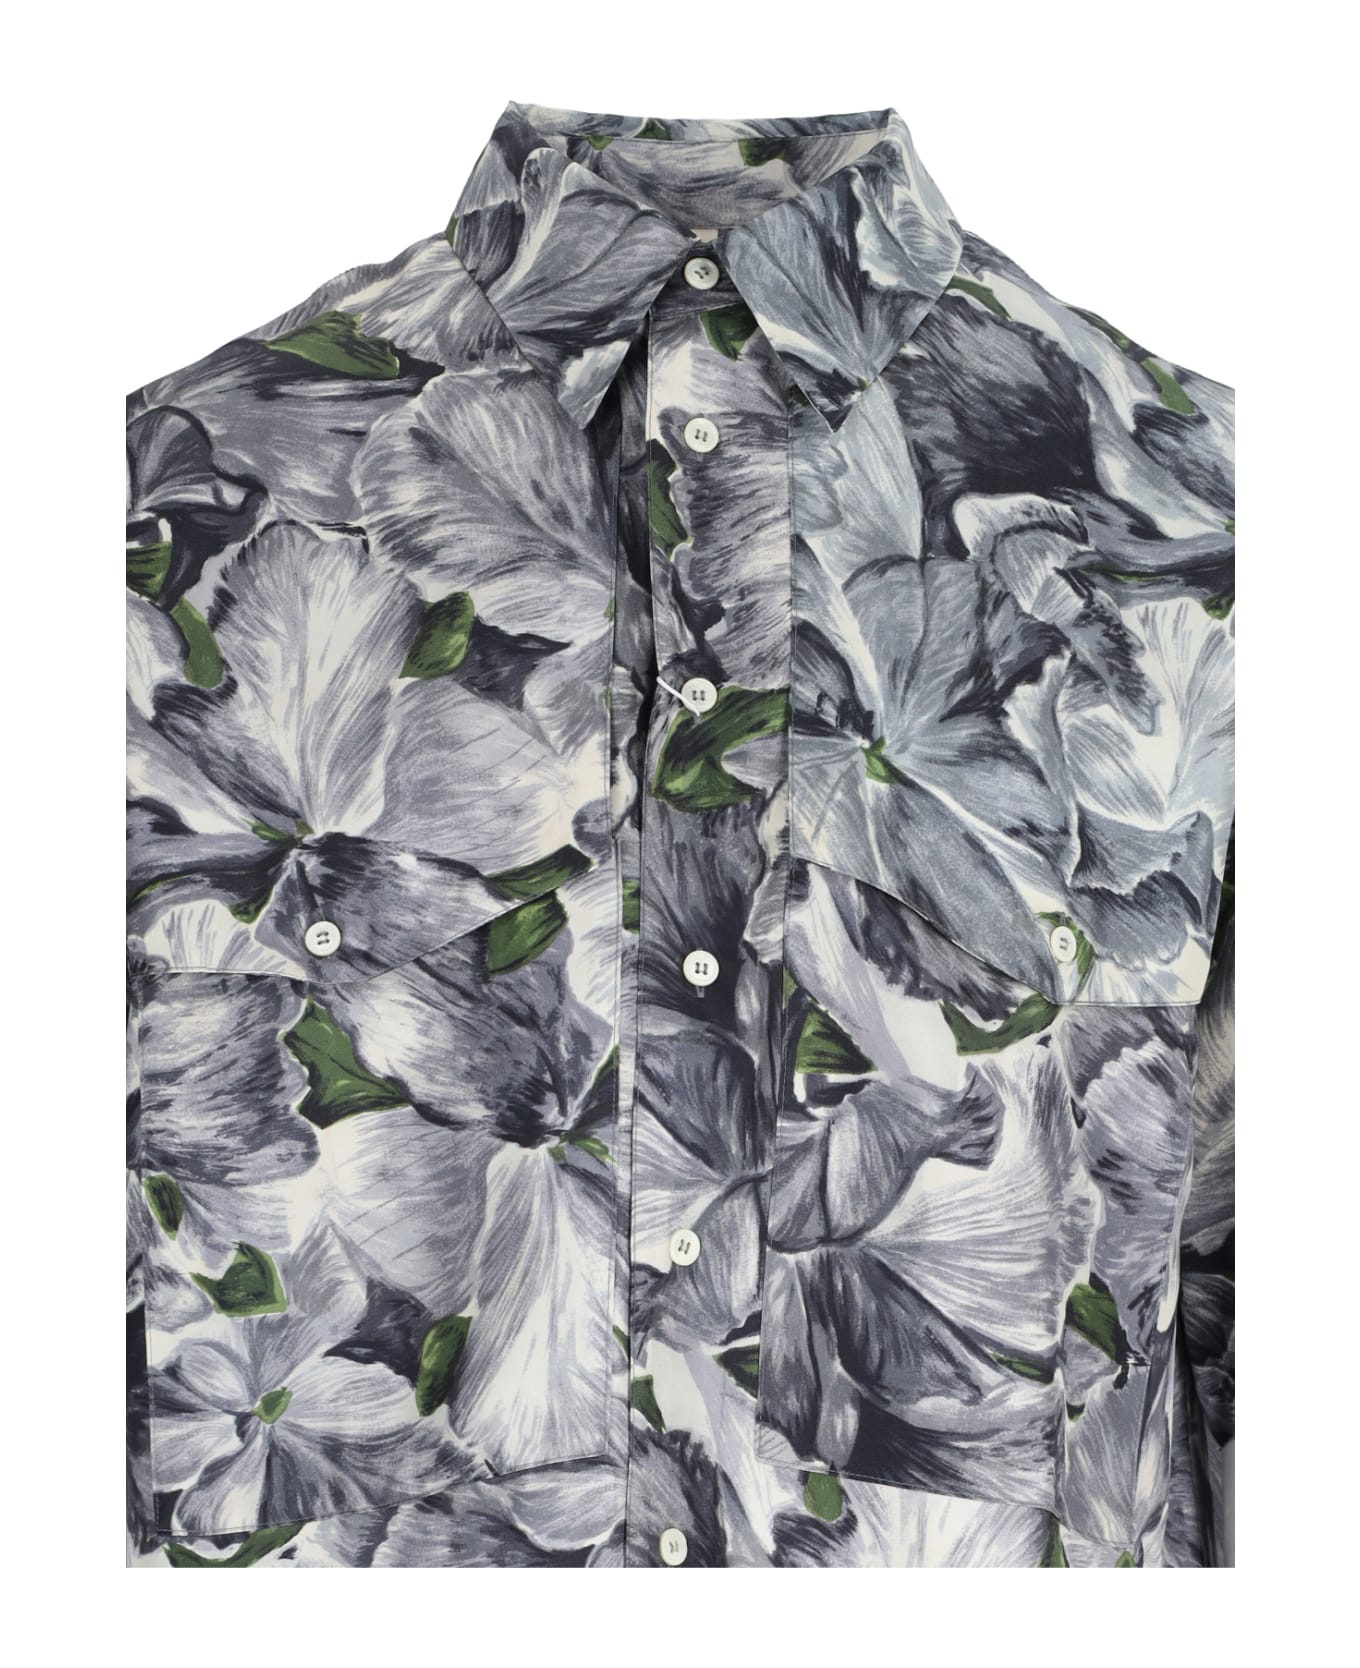 Sunflower Short-sleeved Shirt - Gray シャツ